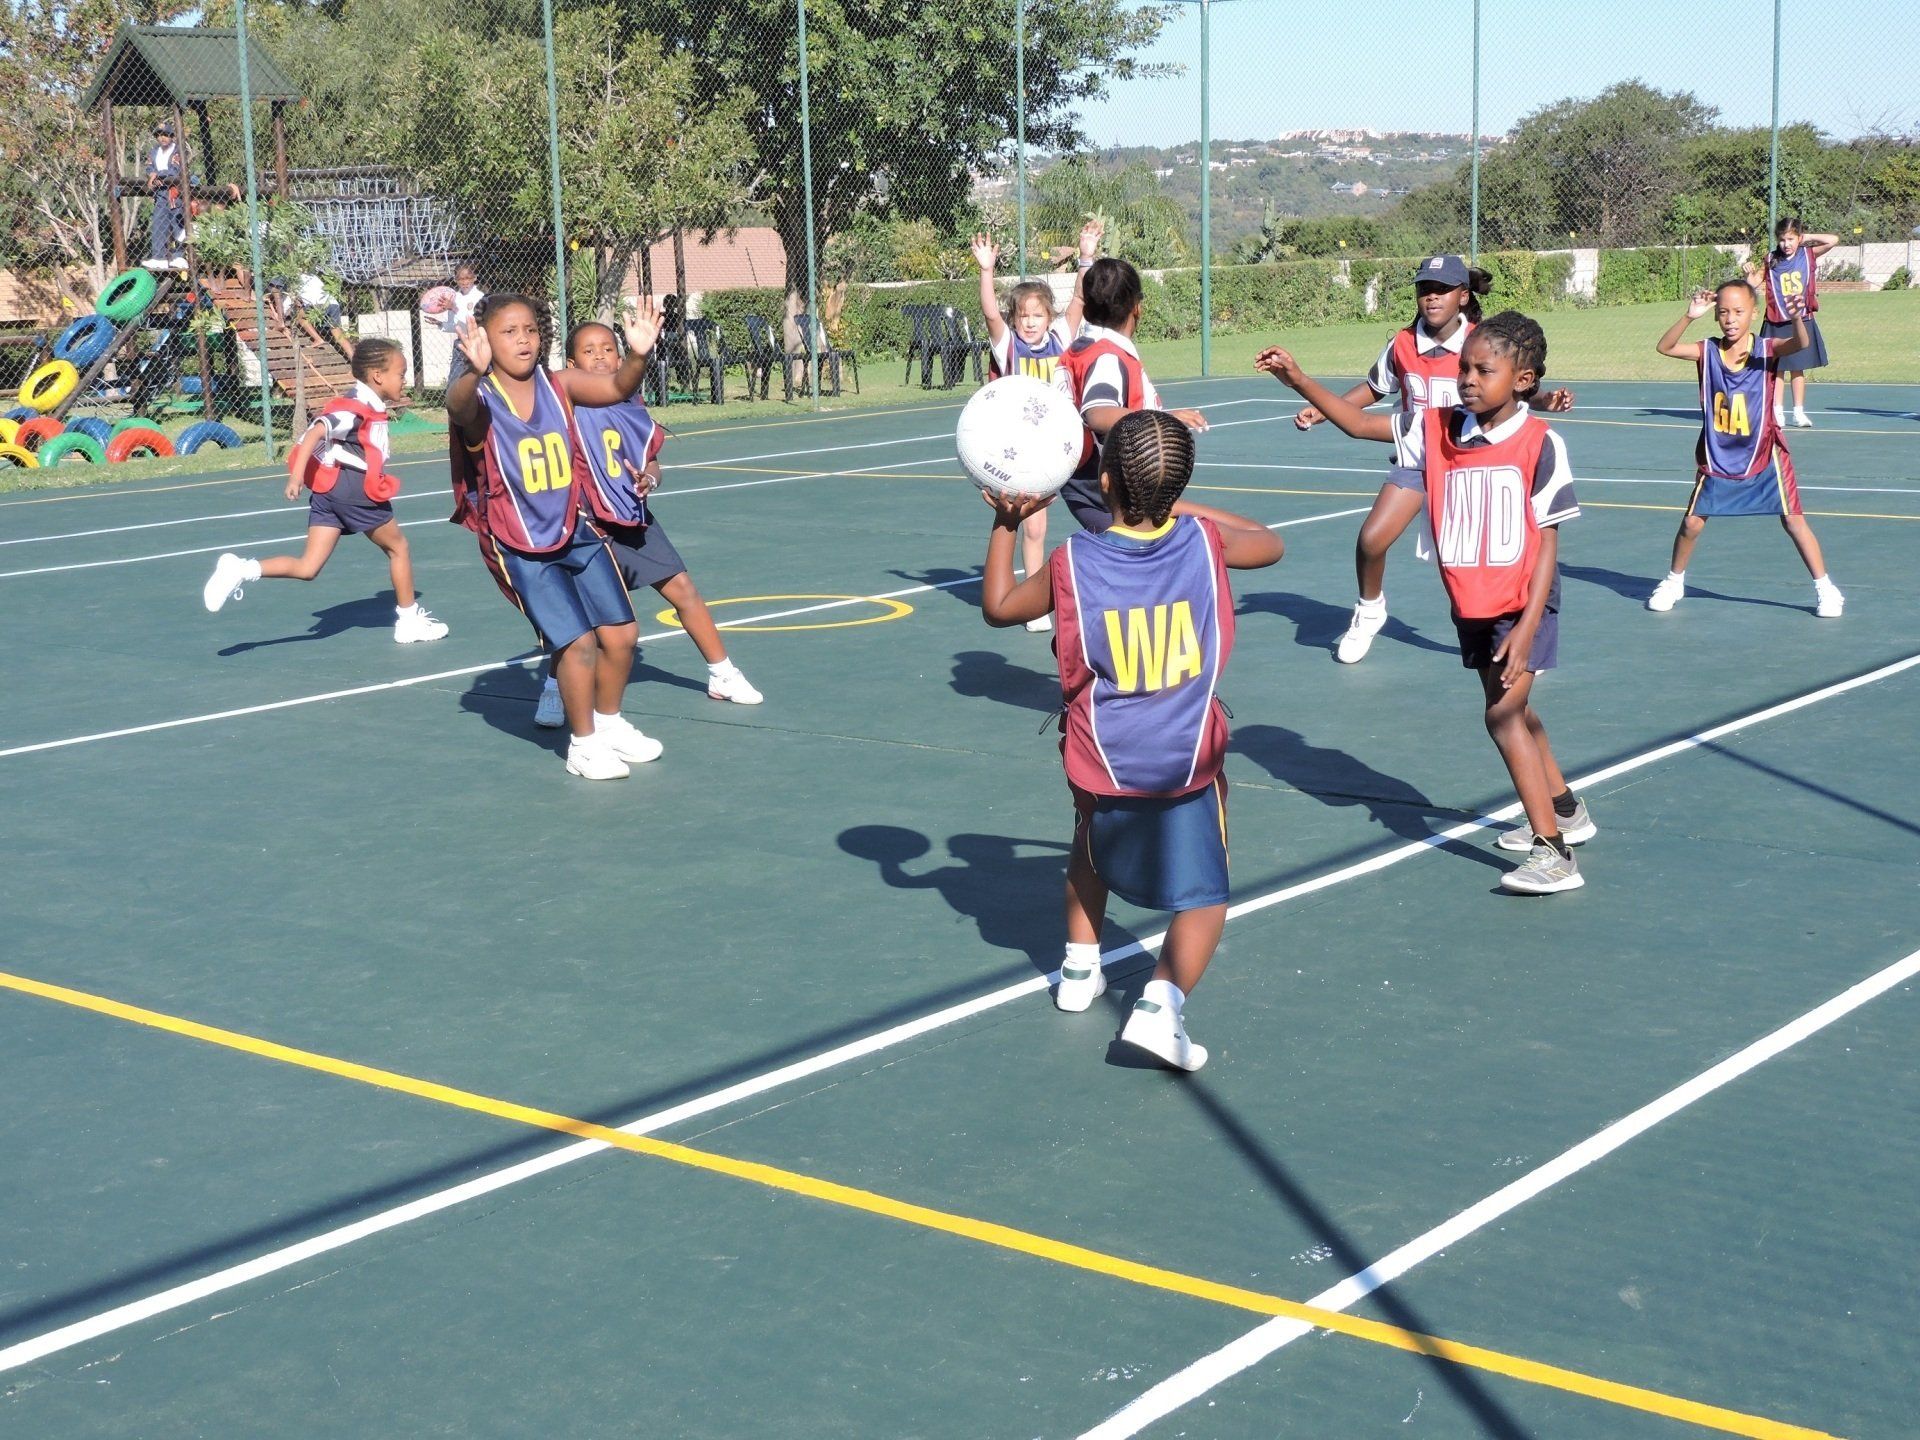 Kids playing netball